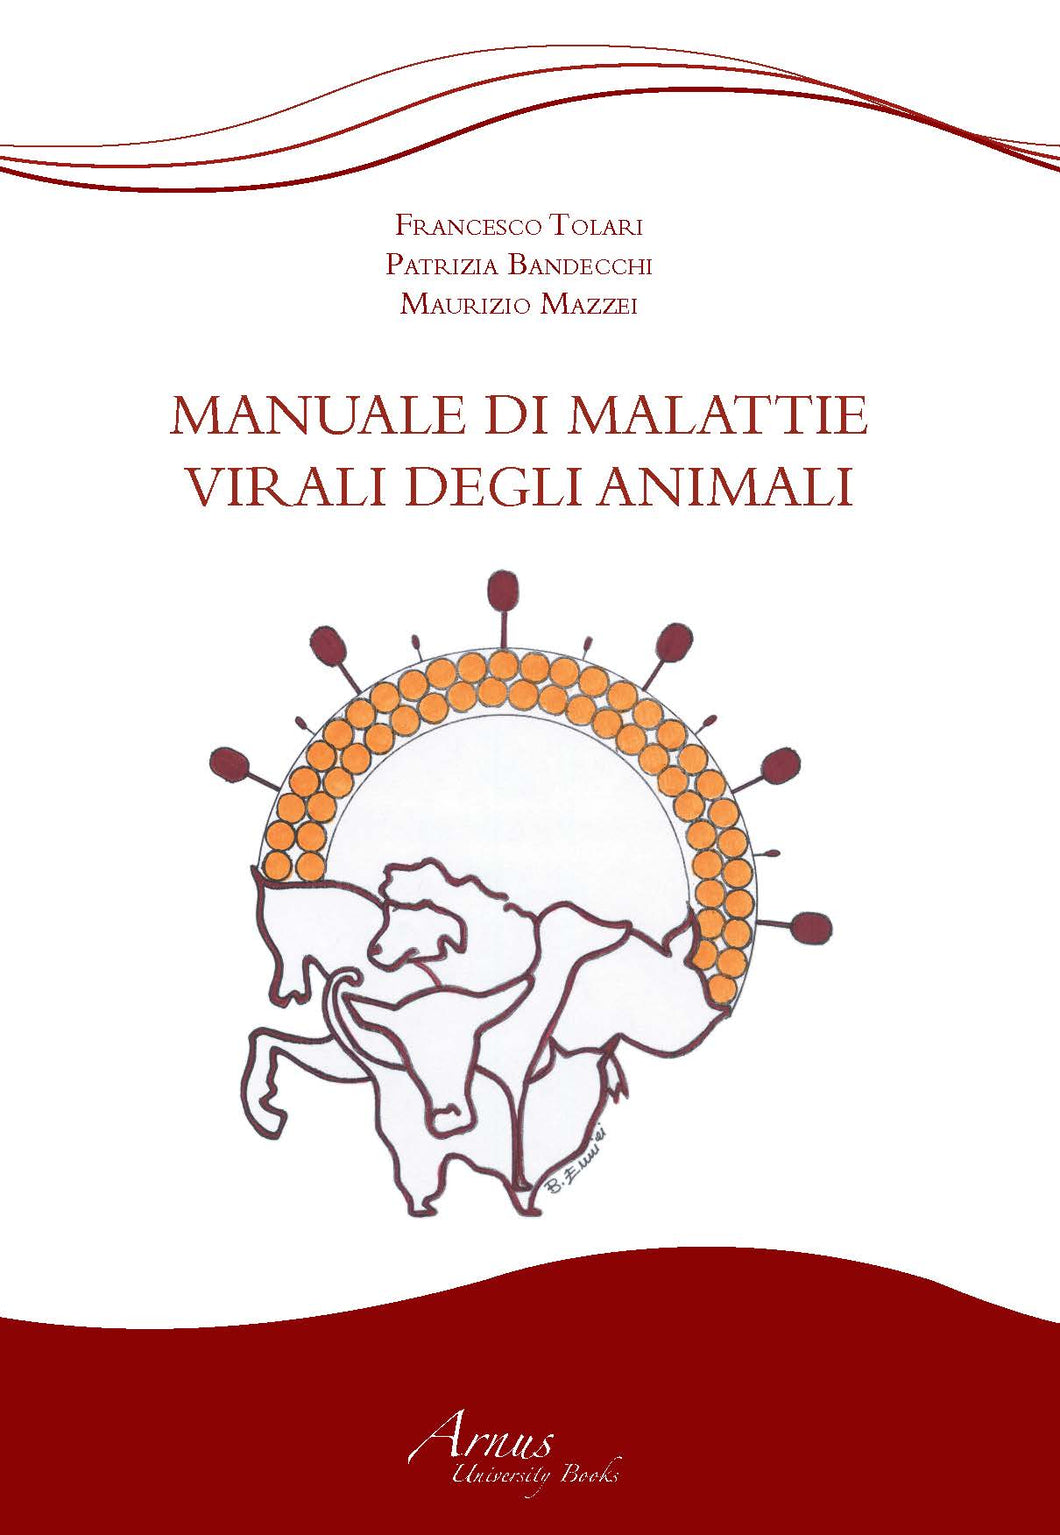 Manuale delle Malattie Virali degli Animali